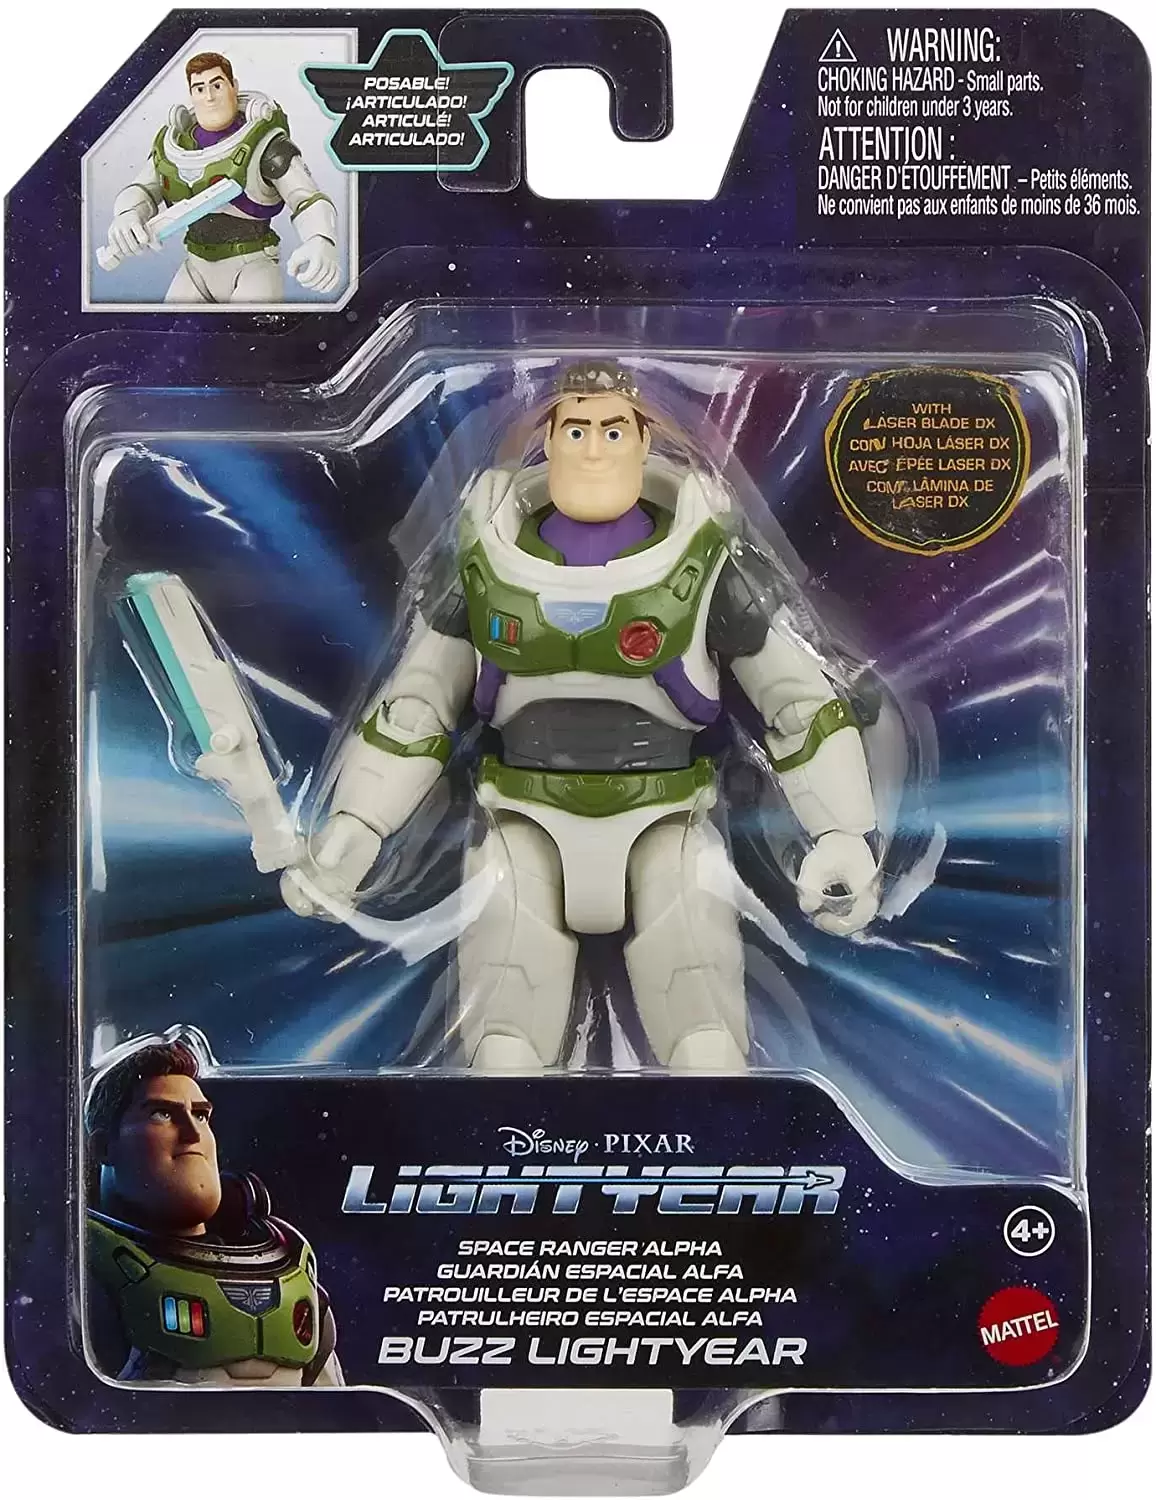 Lightyear - Mattel - Space Ranger Alpha Buzz Lightyear with laser blade DX